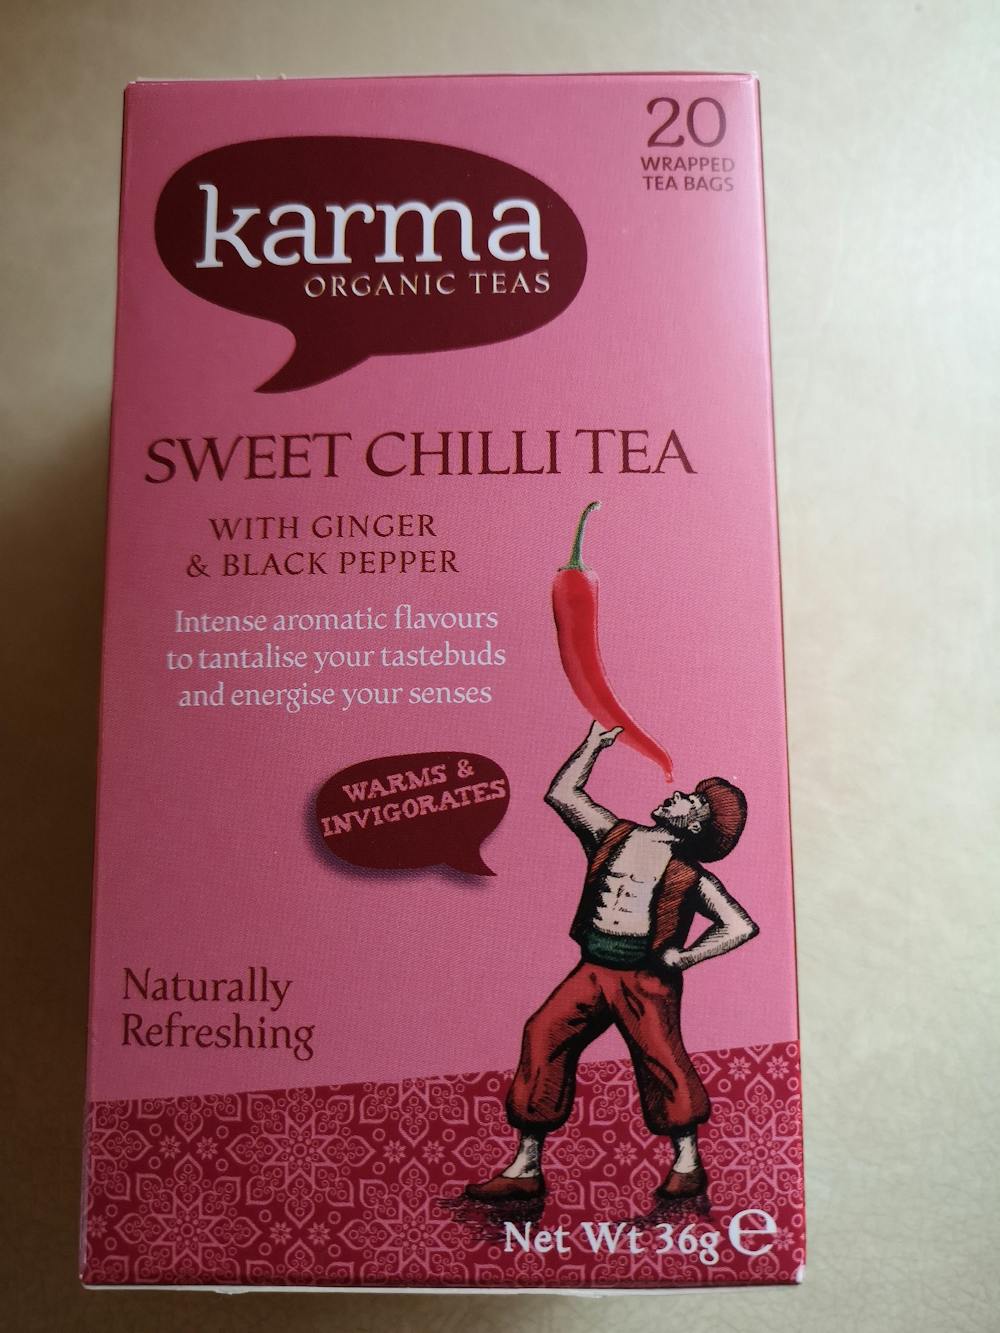 Sweet chilli tea, Karma organic teas